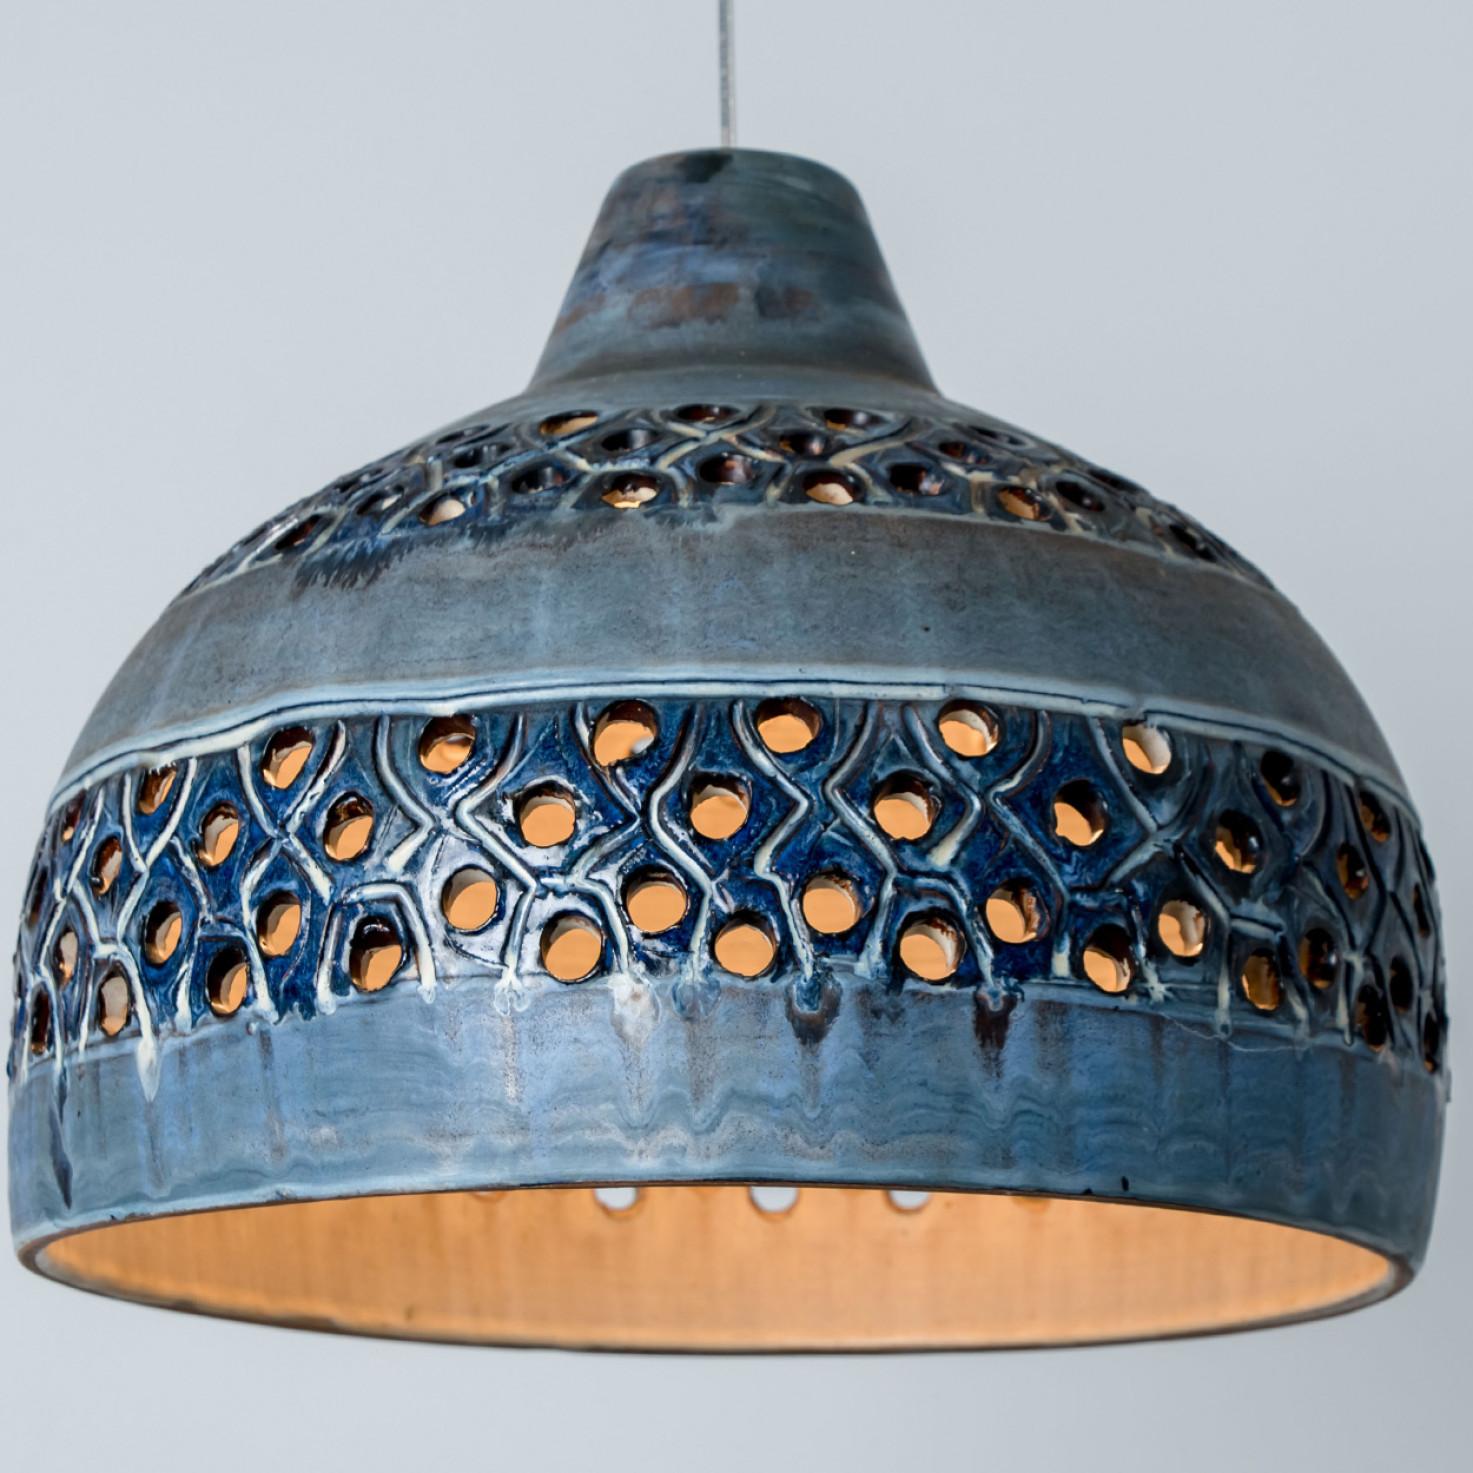 Superbe petite lampe suspendue ronde en forme de bol, fabriquée dans les années 1970 au Danemark avec des céramiques d'un bleu intense. Nous disposons également d'une multitude d'ensembles et de compositions lumineuses uniques en céramique colorée,